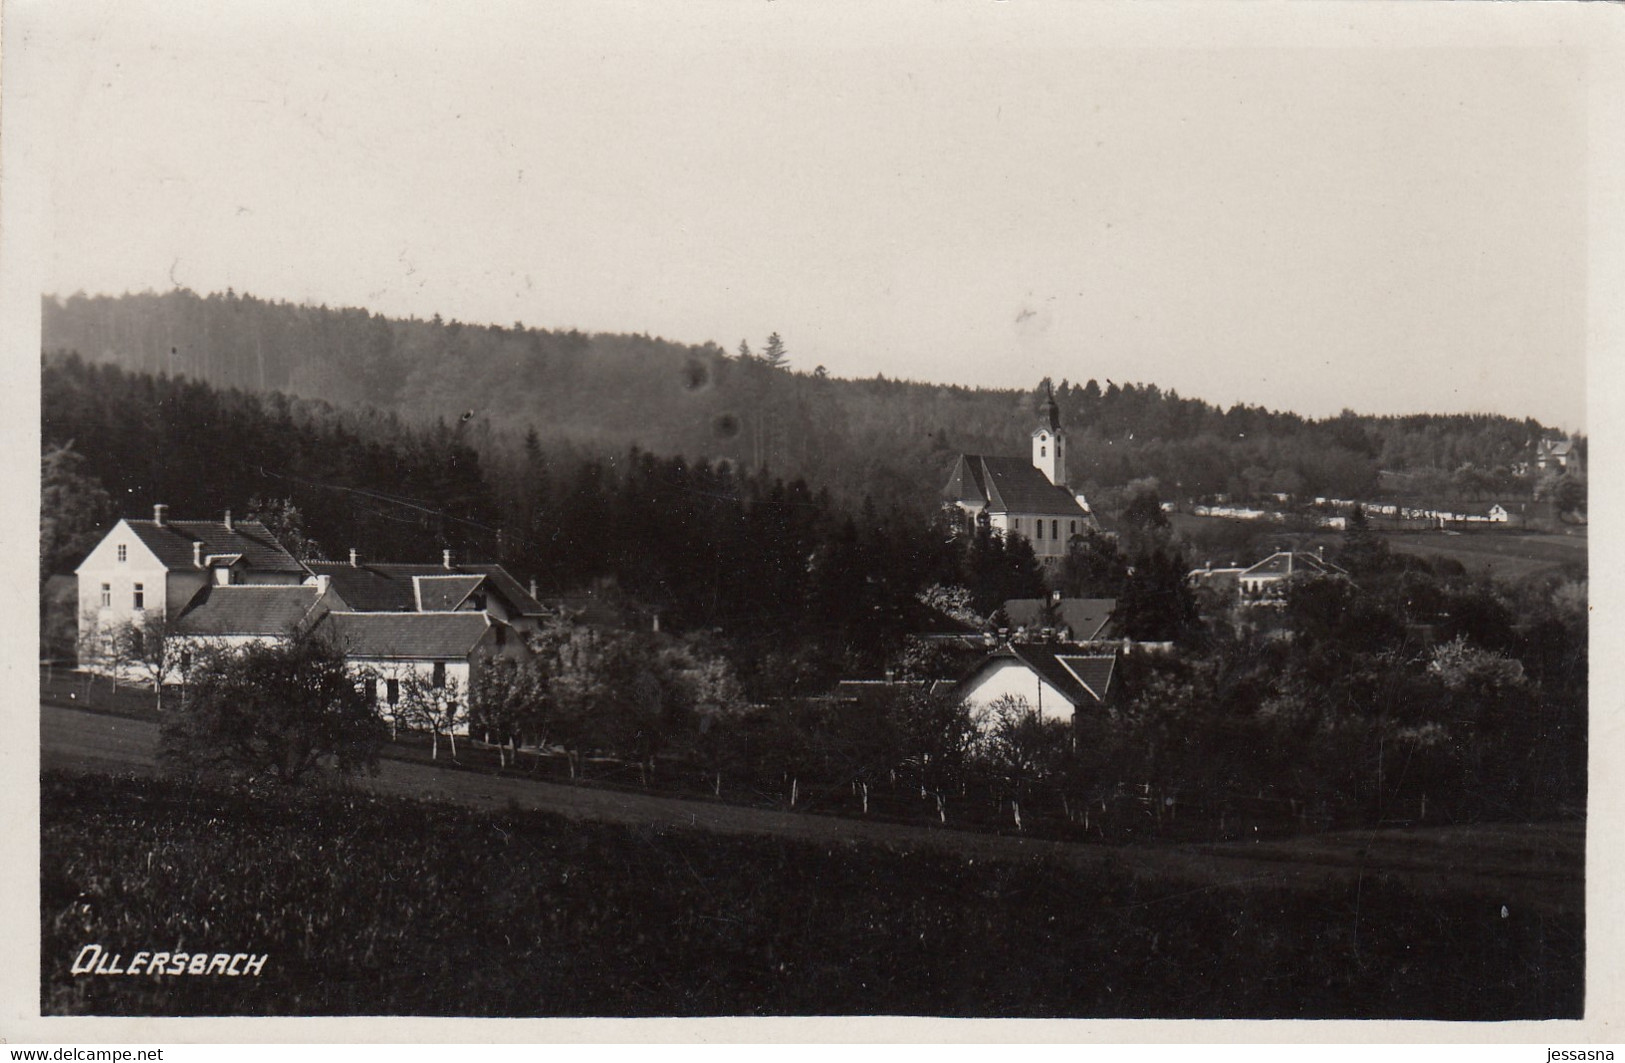 AK - OLLERSBACH (Neulengbach) - Gesamtansicht 1931 - Neulengbach